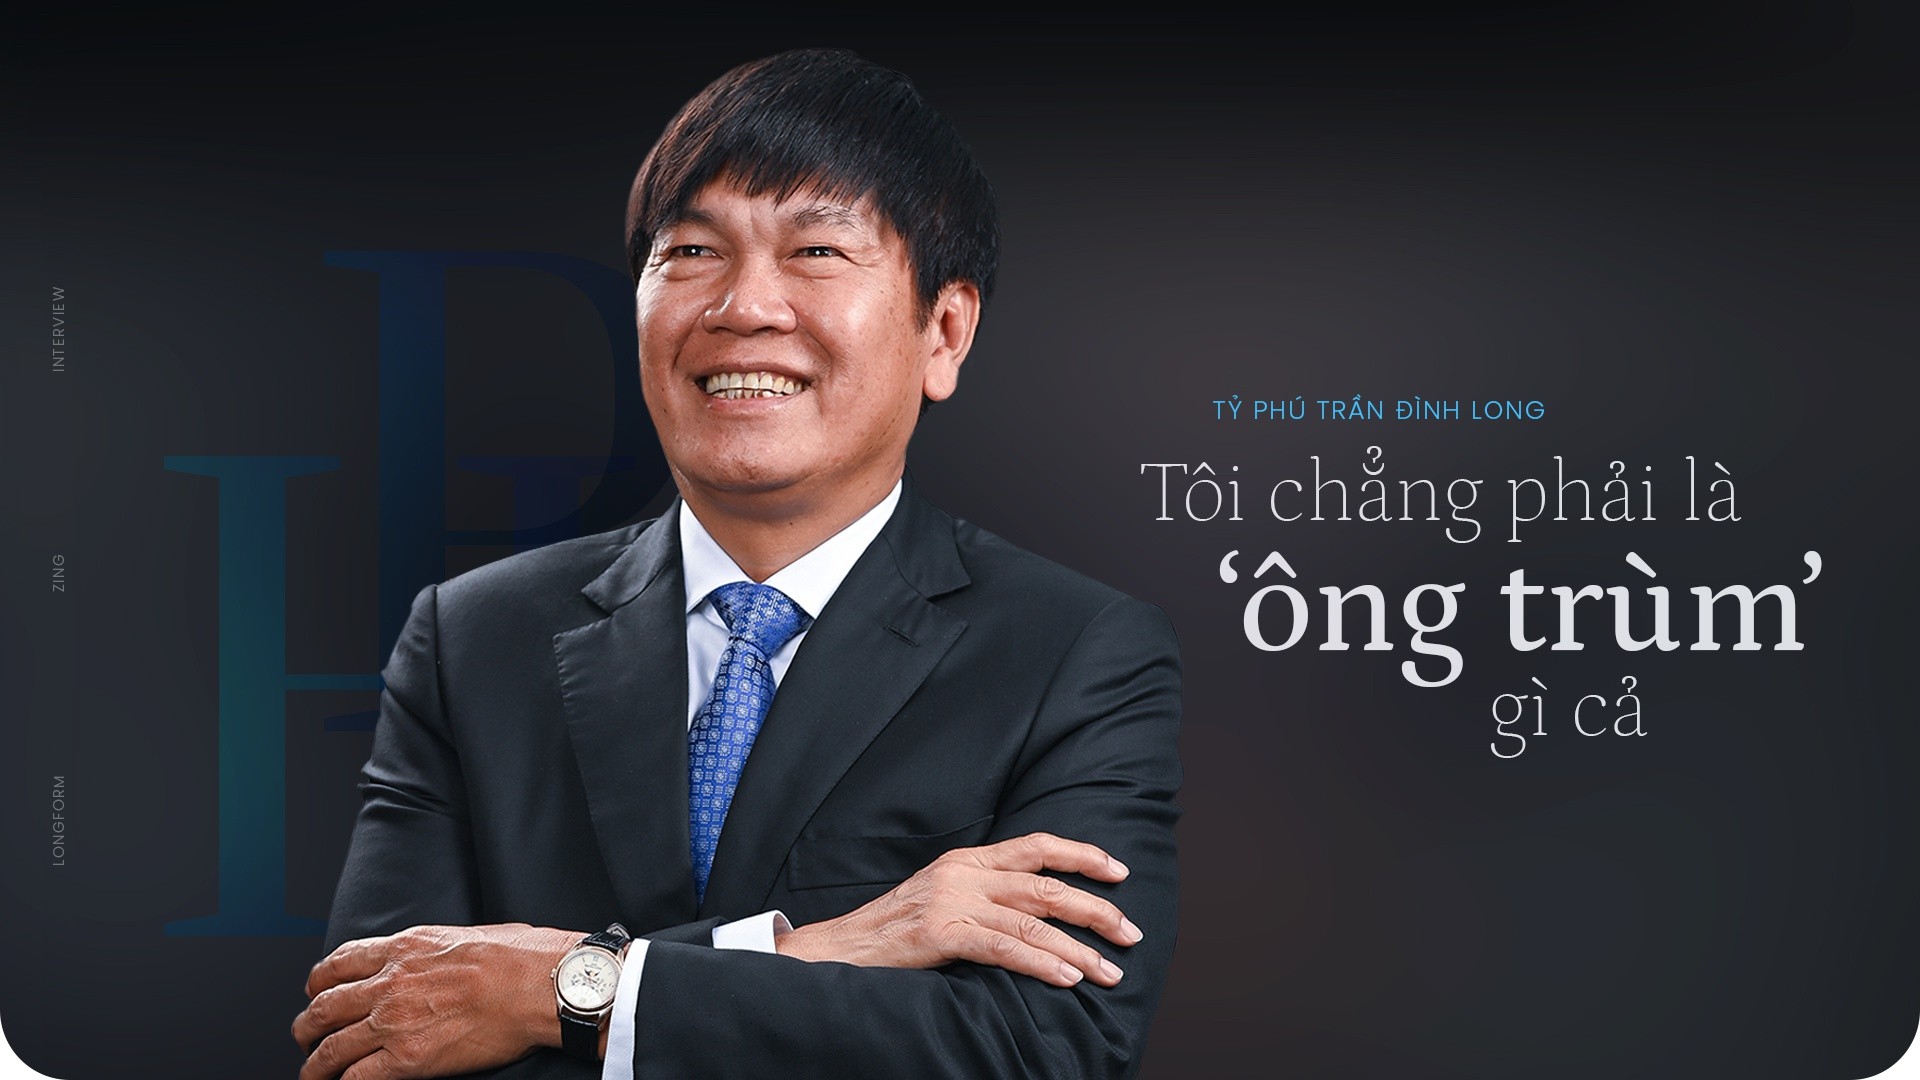 Tỷ phú Trần Đình Long - người đứng đầu Tập đoàn Hòa Phát trở thành người giàu nhất sàn chứng khoán Việt Nam hiện tại